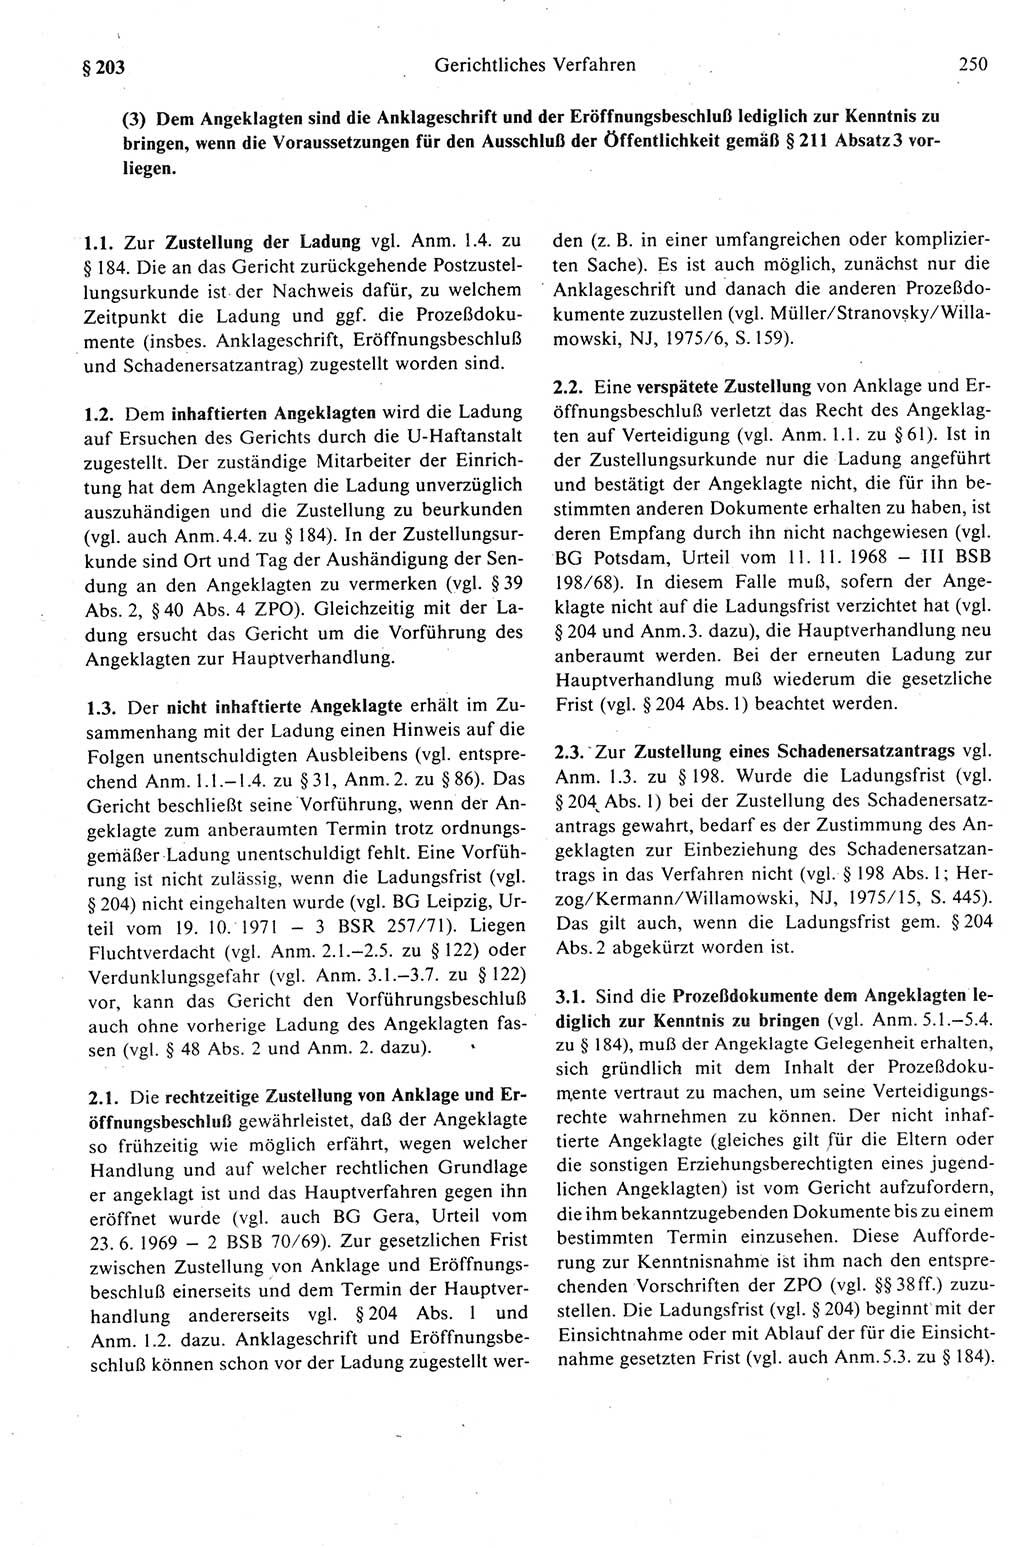 Strafprozeßrecht der DDR (Deutsche Demokratische Republik), Kommentar zur Strafprozeßordnung (StPO) 1989, Seite 250 (Strafprozeßr. DDR Komm. StPO 1989, S. 250)